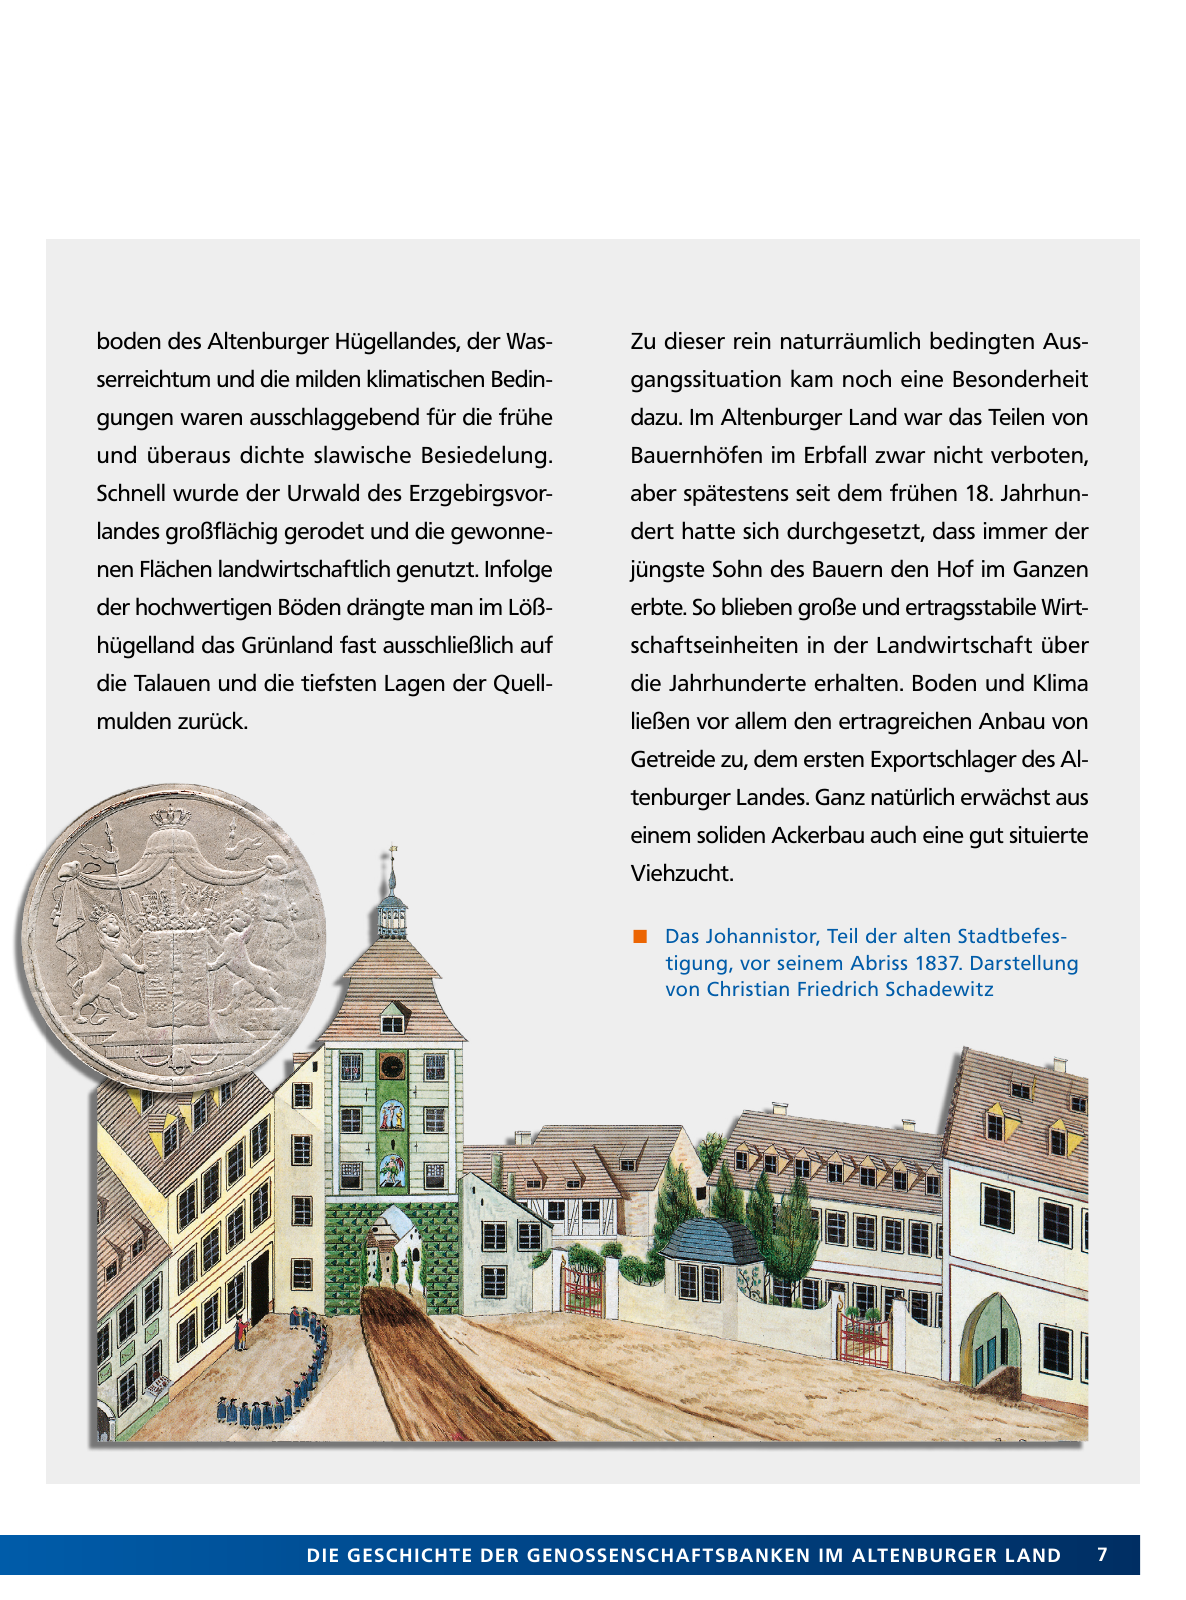 Vorschau Von der Idee, sich selbst zu helfen – 150 Jahre genossenschaftliches Bankwesen im Altenburger Land Seite 7